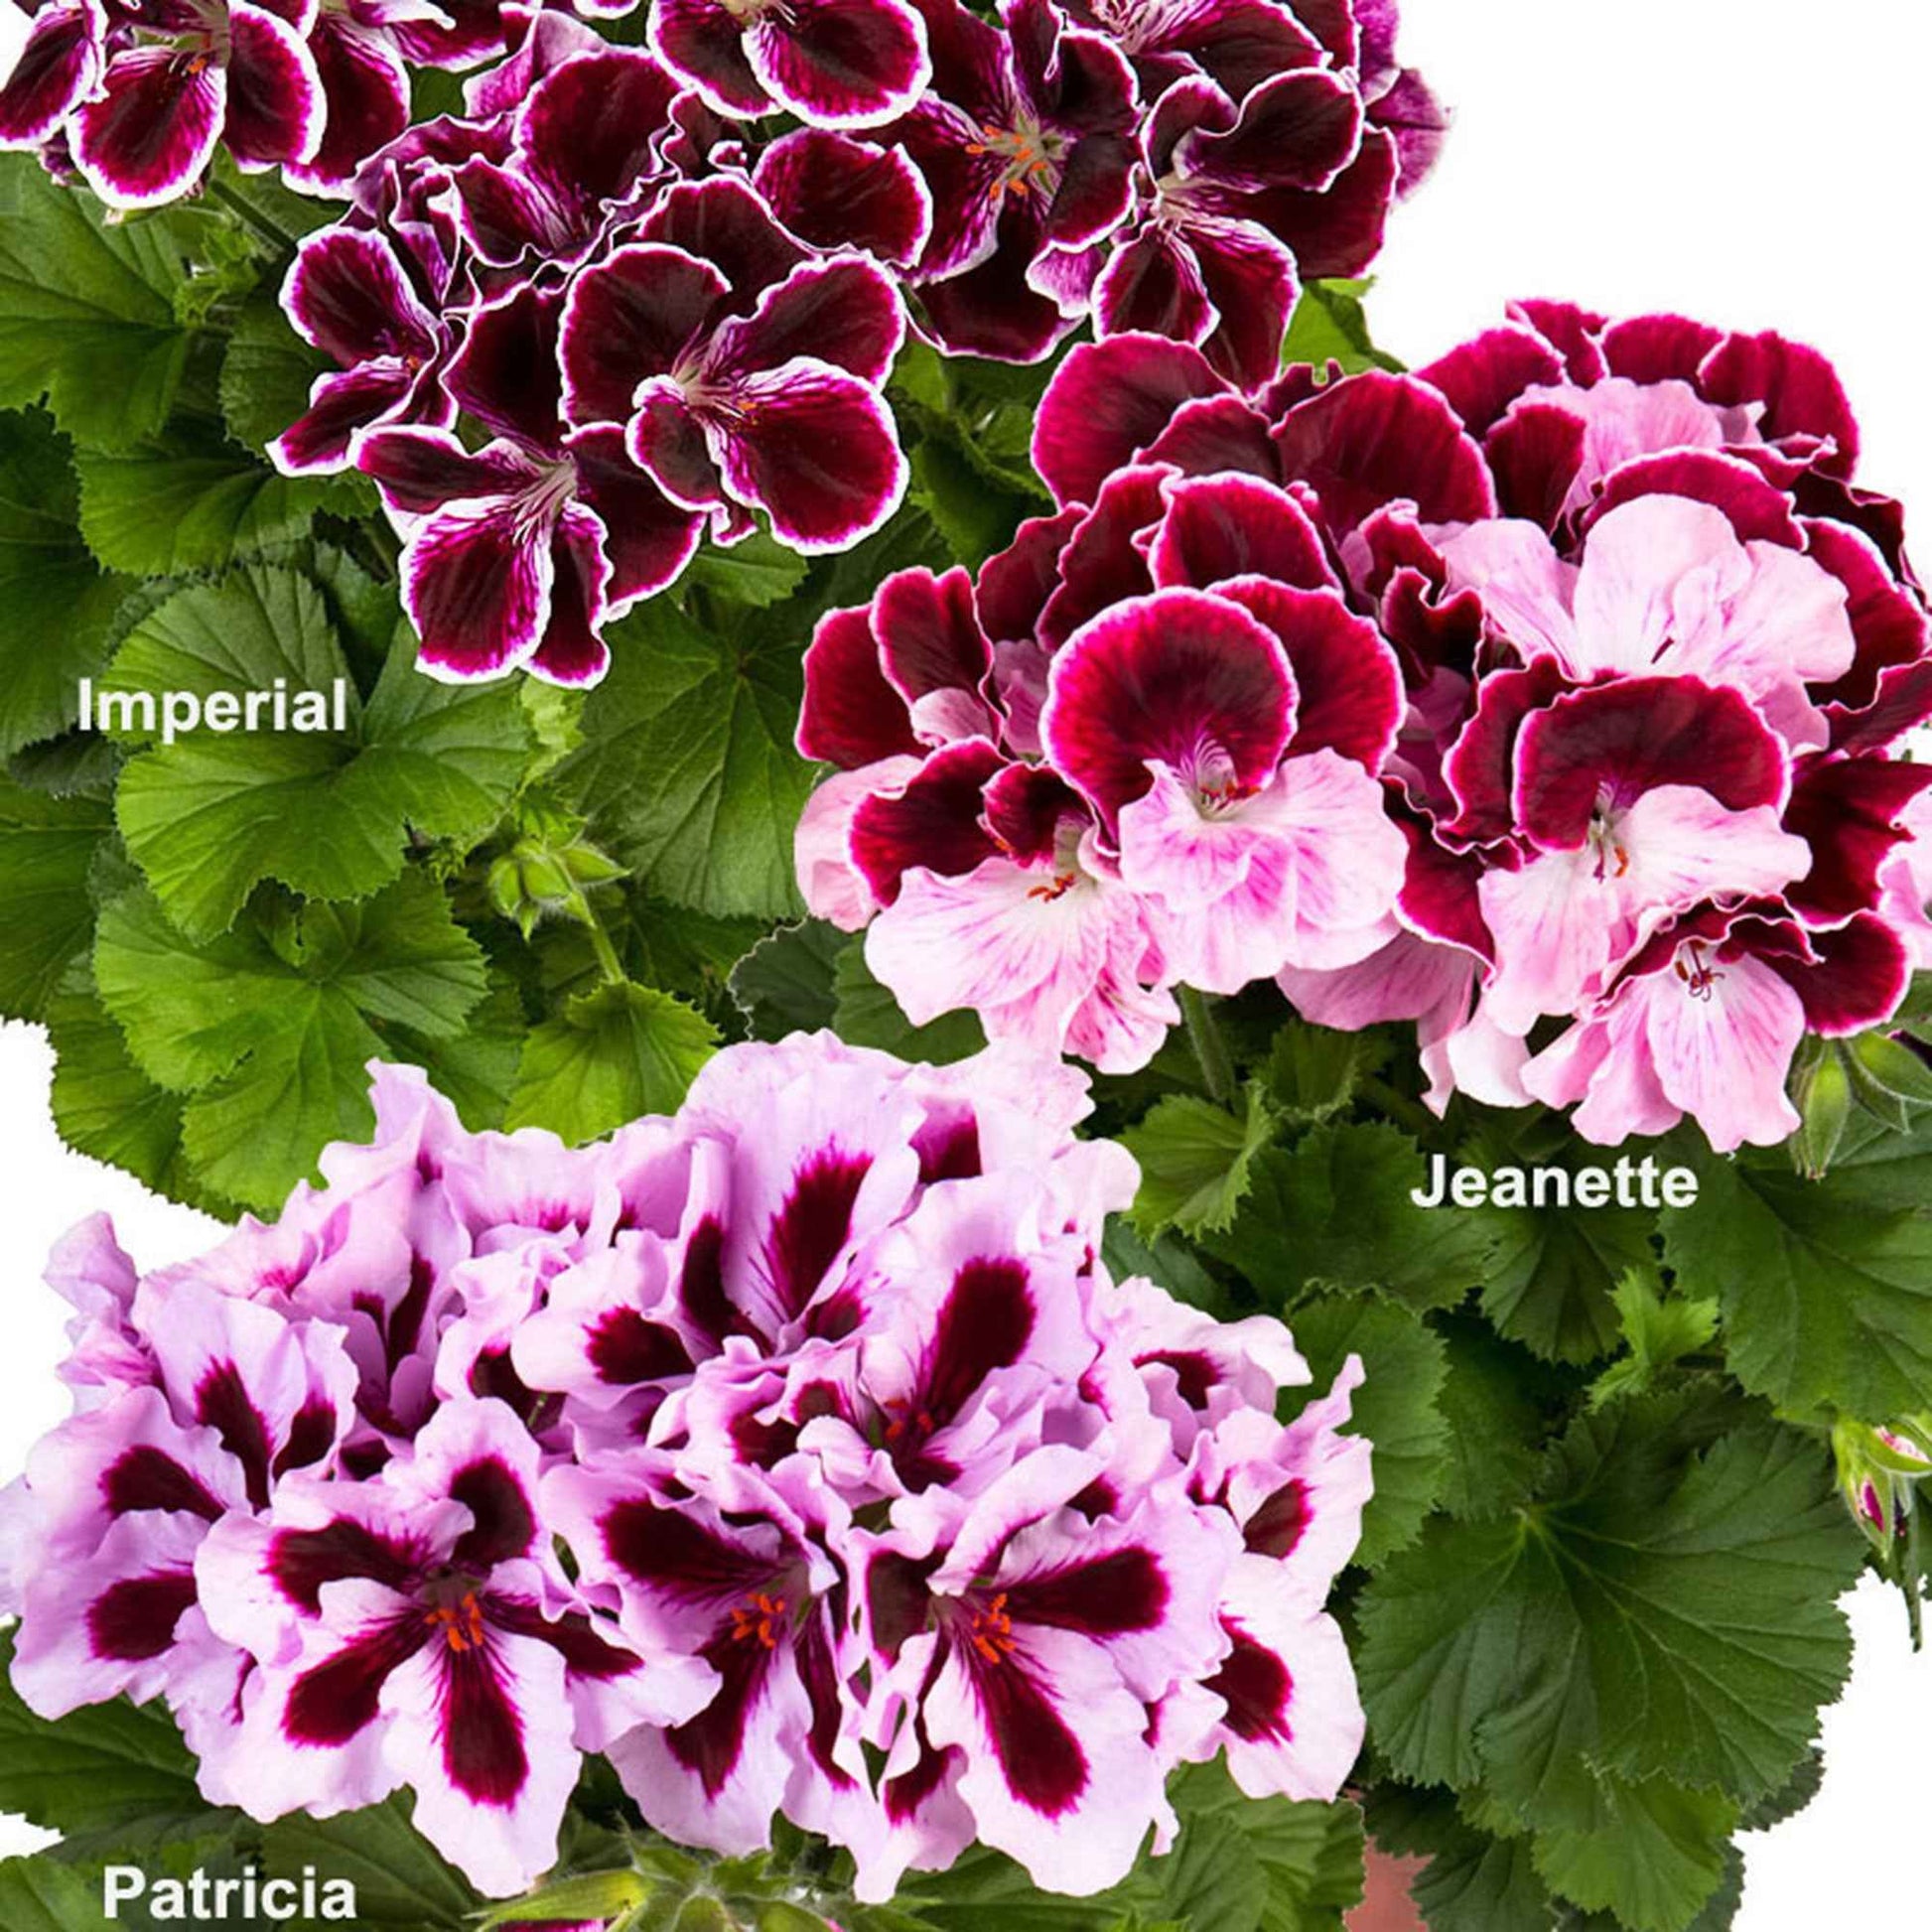 3x Géranium des fleuristes Pelargonium 'Imperial' + 'Jeanette' + 'Patricia' - Fleurs de balcon